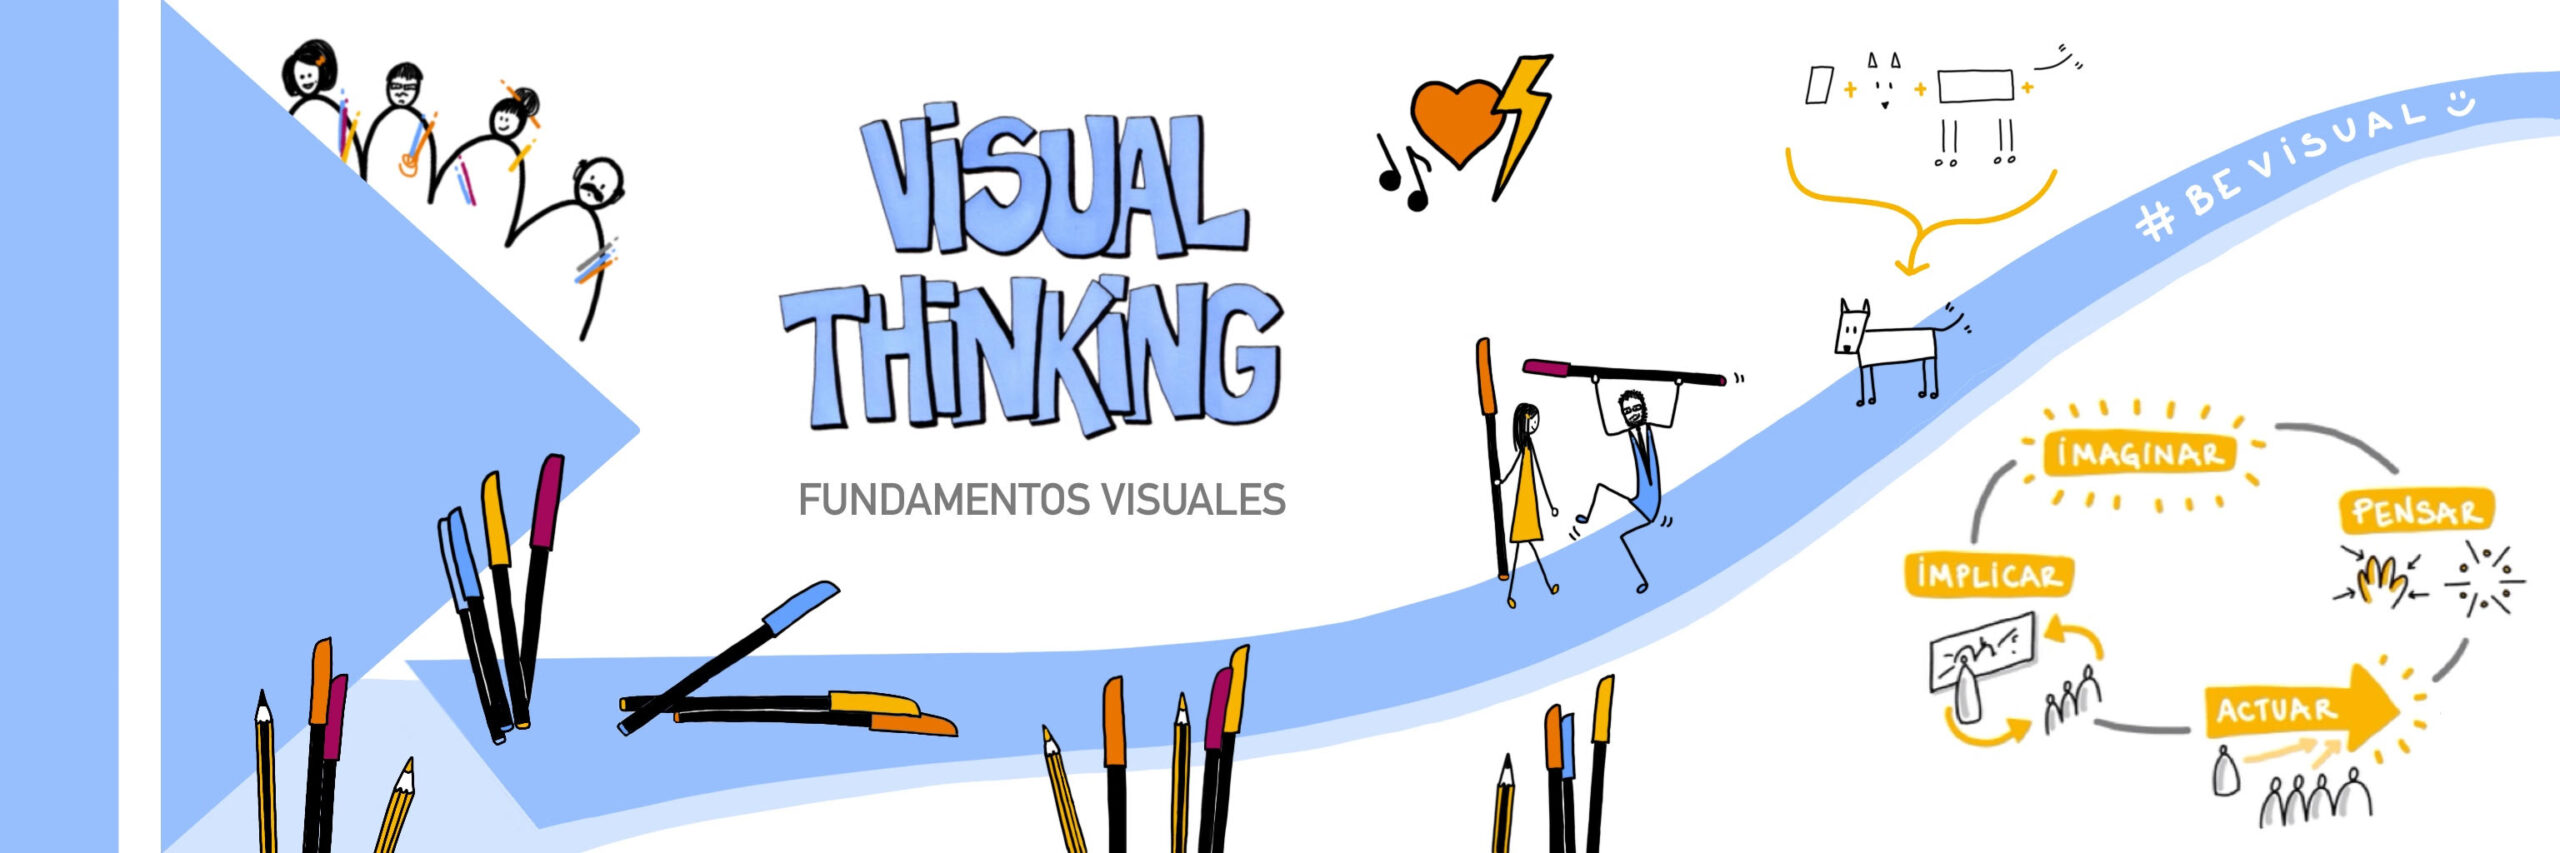 Taller Visual Thinking 1 - Fundamentos Visuales